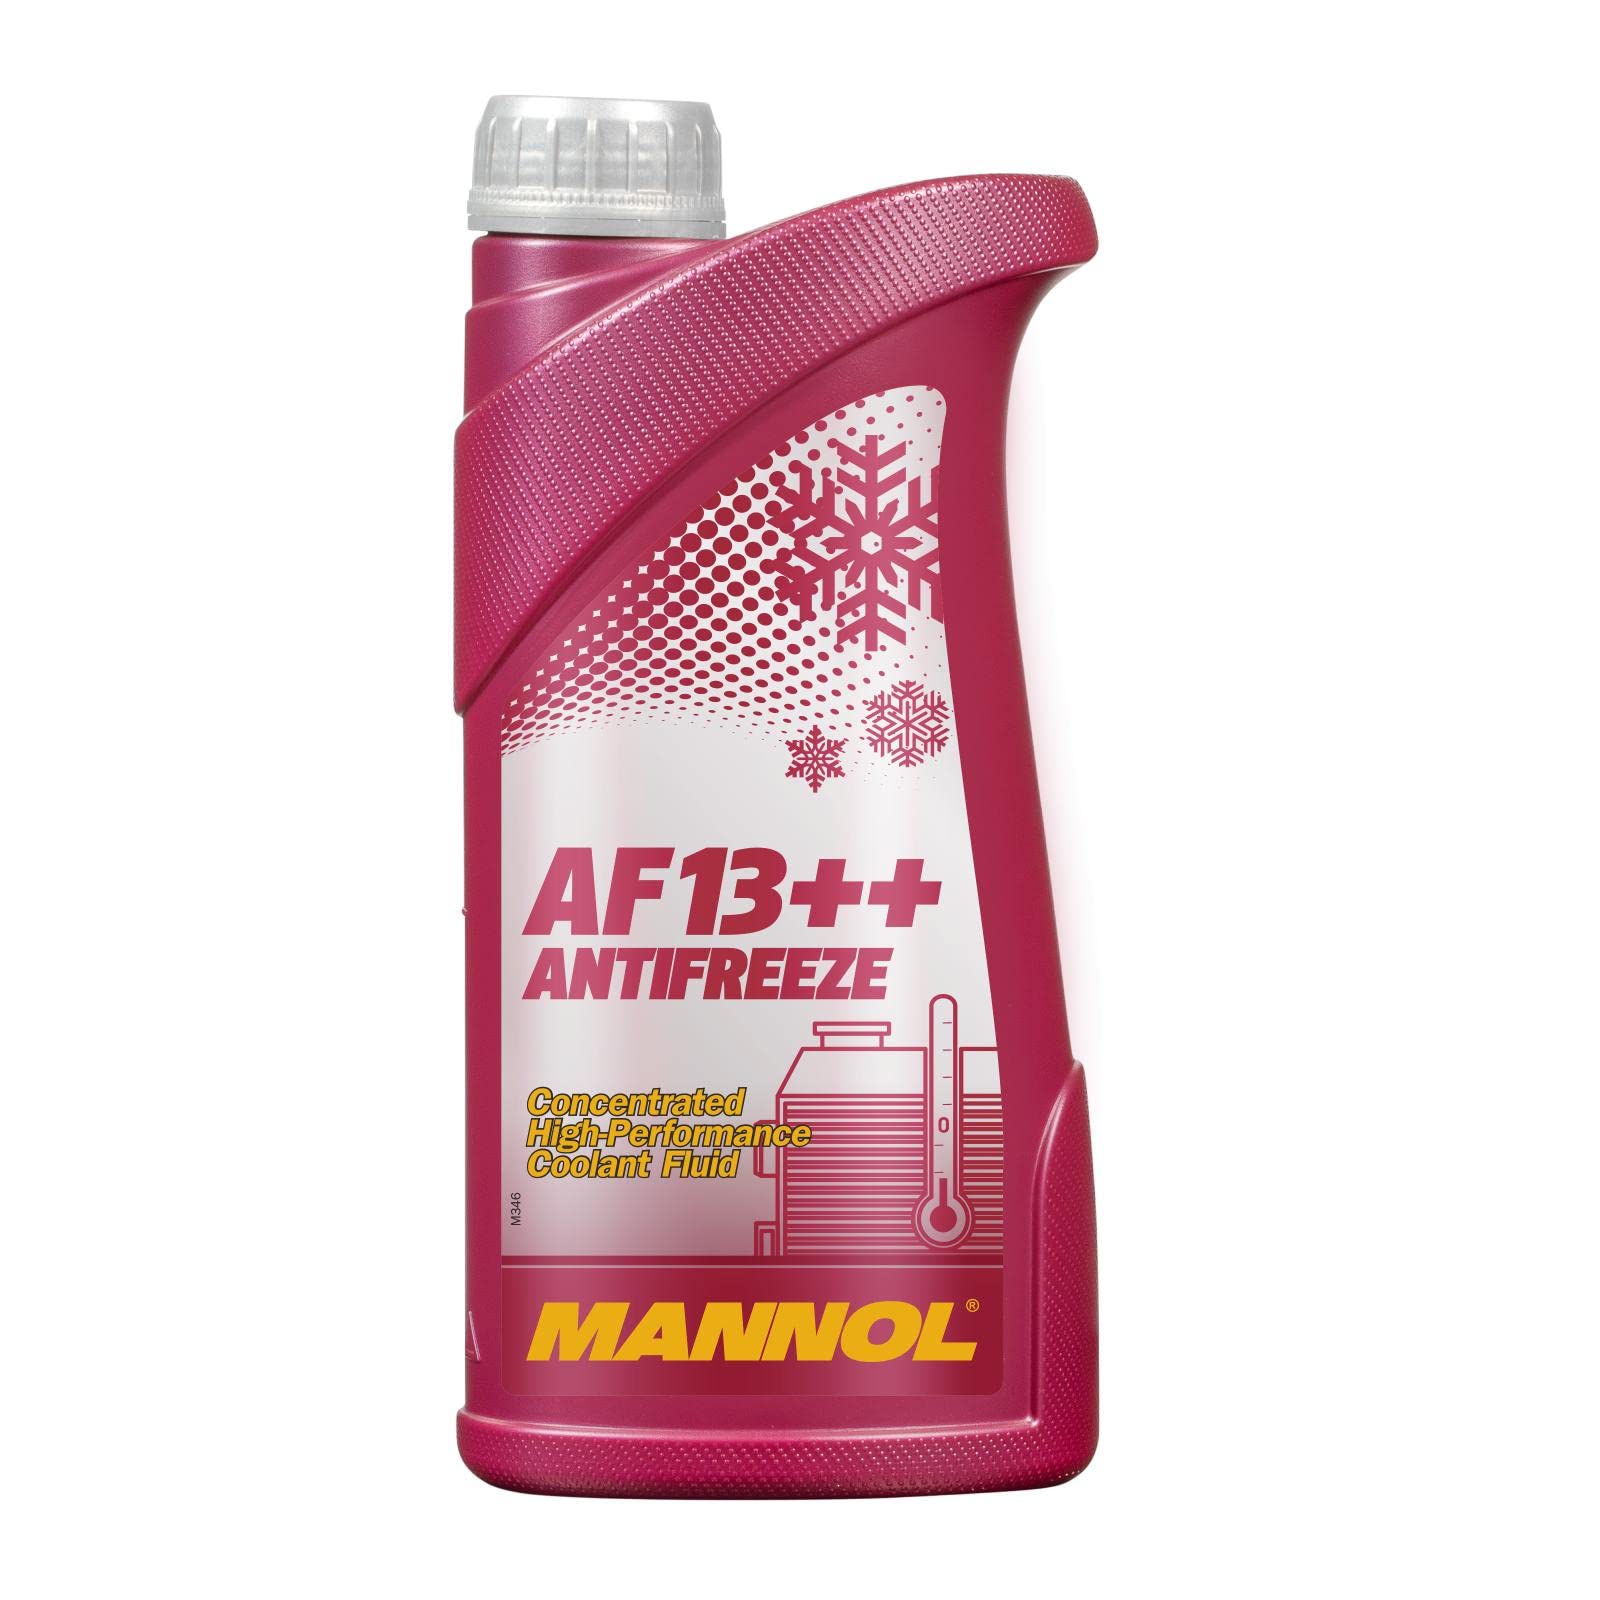 Mannol AF13++ Antifreeze Frostschutzmitttel 1L - Effektiver Korrosions- und Überhitzungsschutz, für Moderne Motoren, ROT von MANNOL